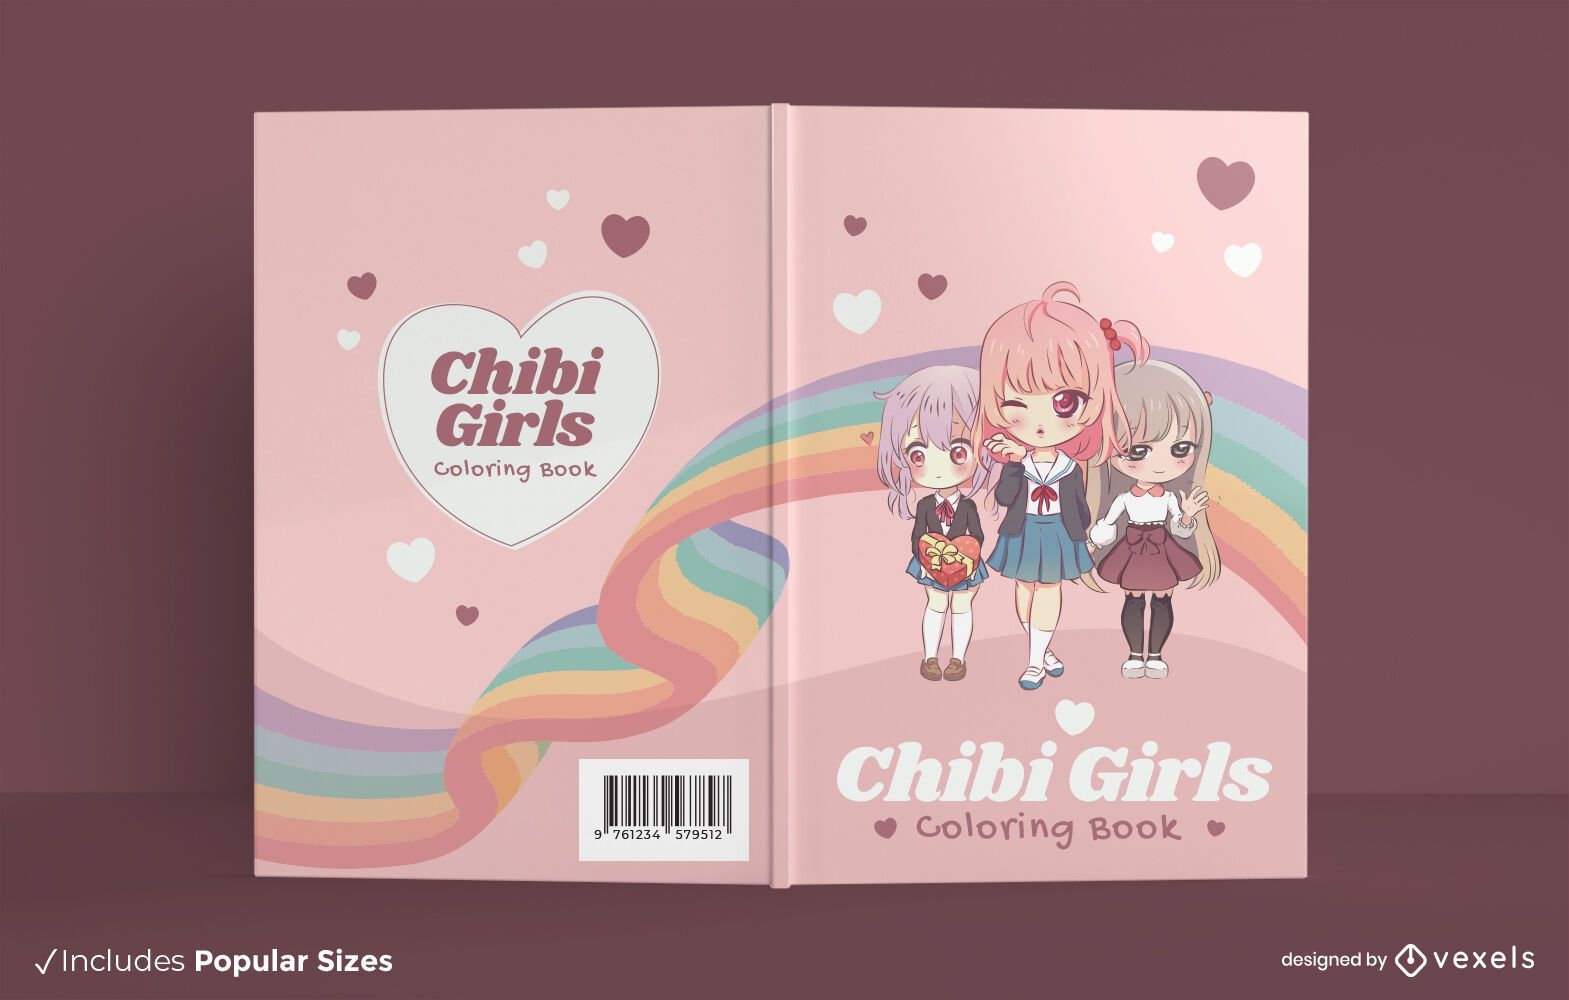 Dise?o de portada de libro para colorear de chicas anime chibi